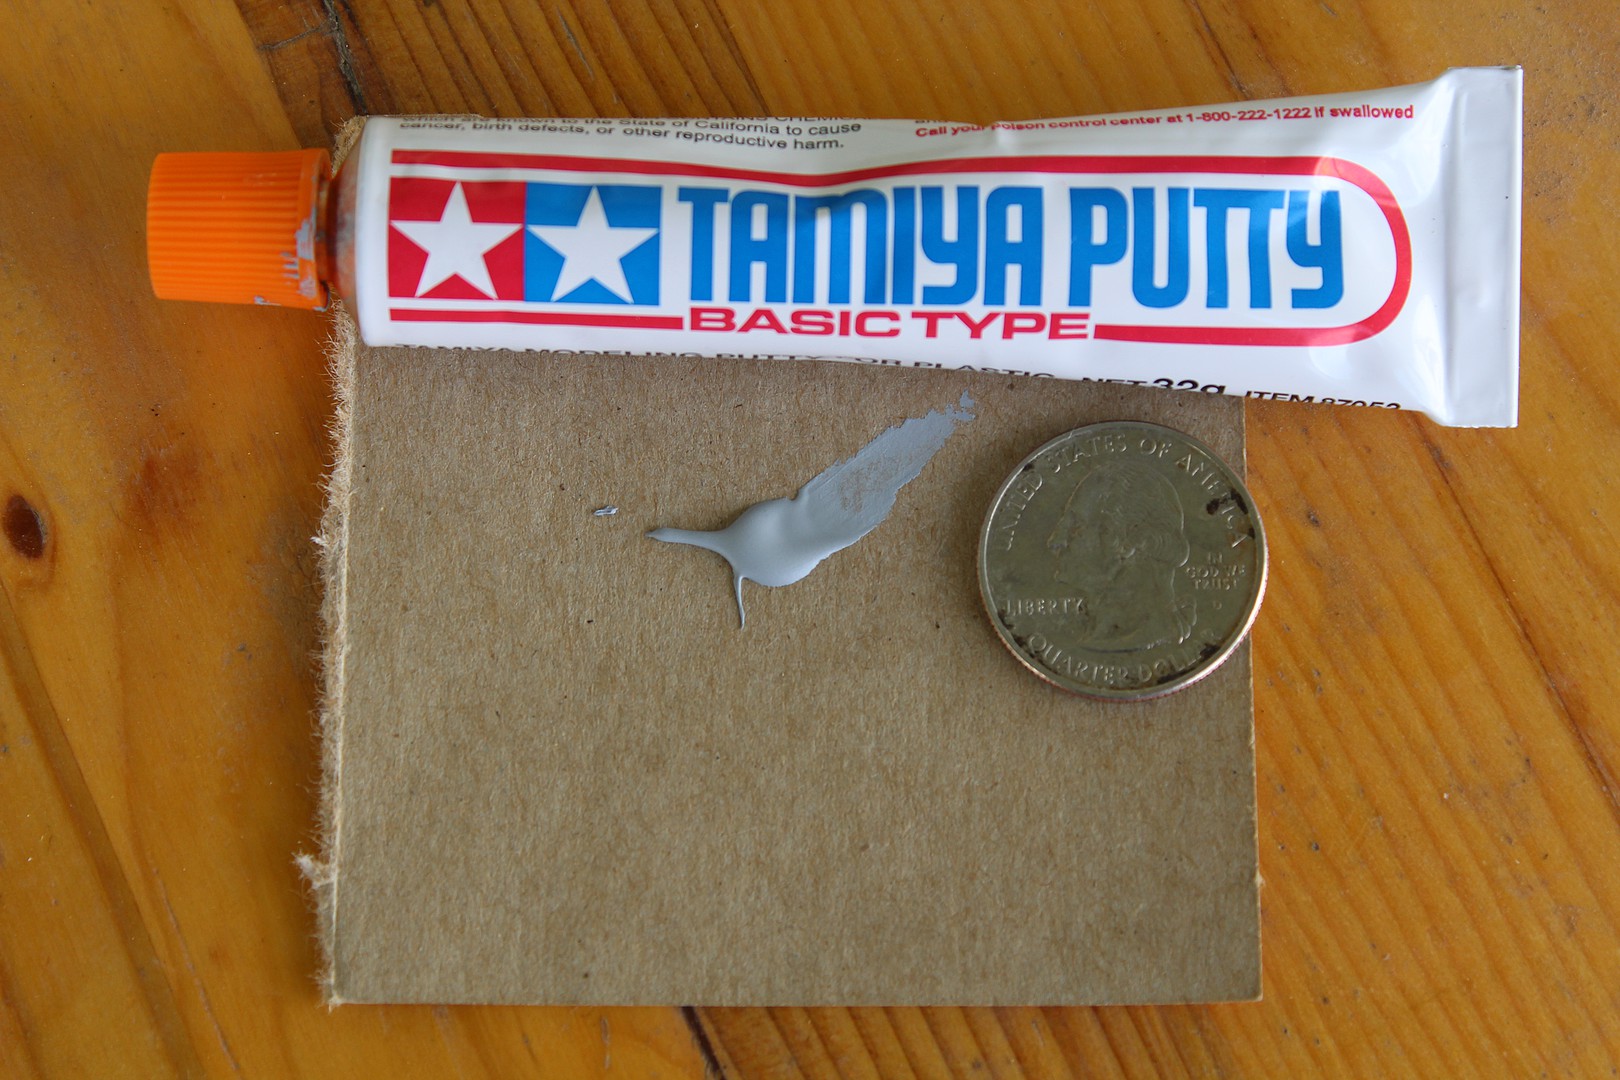 Tamiya Putty - Basic Type - Plastic Putties - Modelling supplies - Sklep  Modelarski Agtom